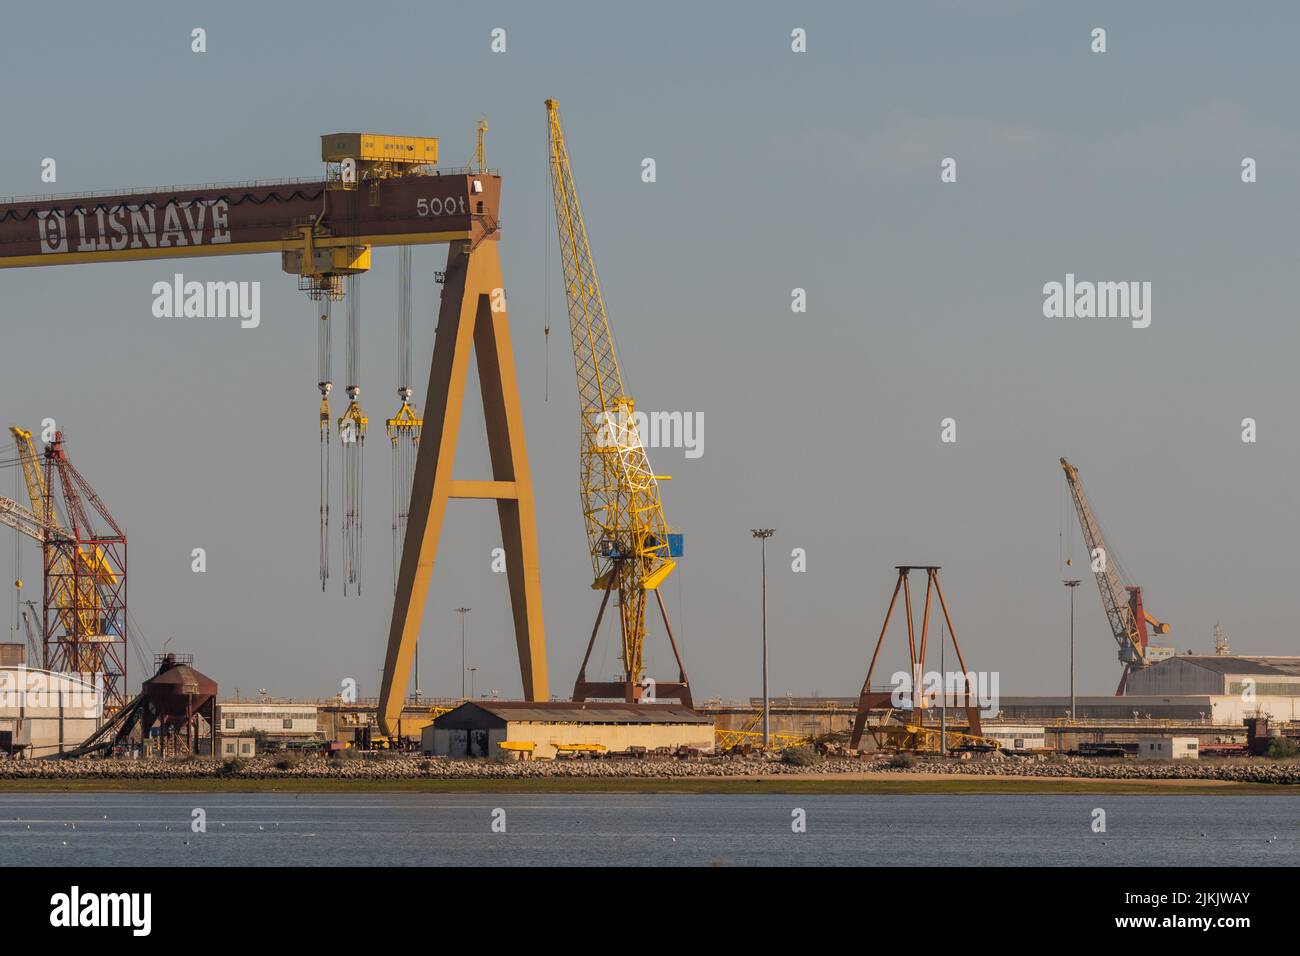 L'azienda navale di Lisnave con le sue attrezzature industriali e gru nel porto di Setubal, Portogallo Foto Stock